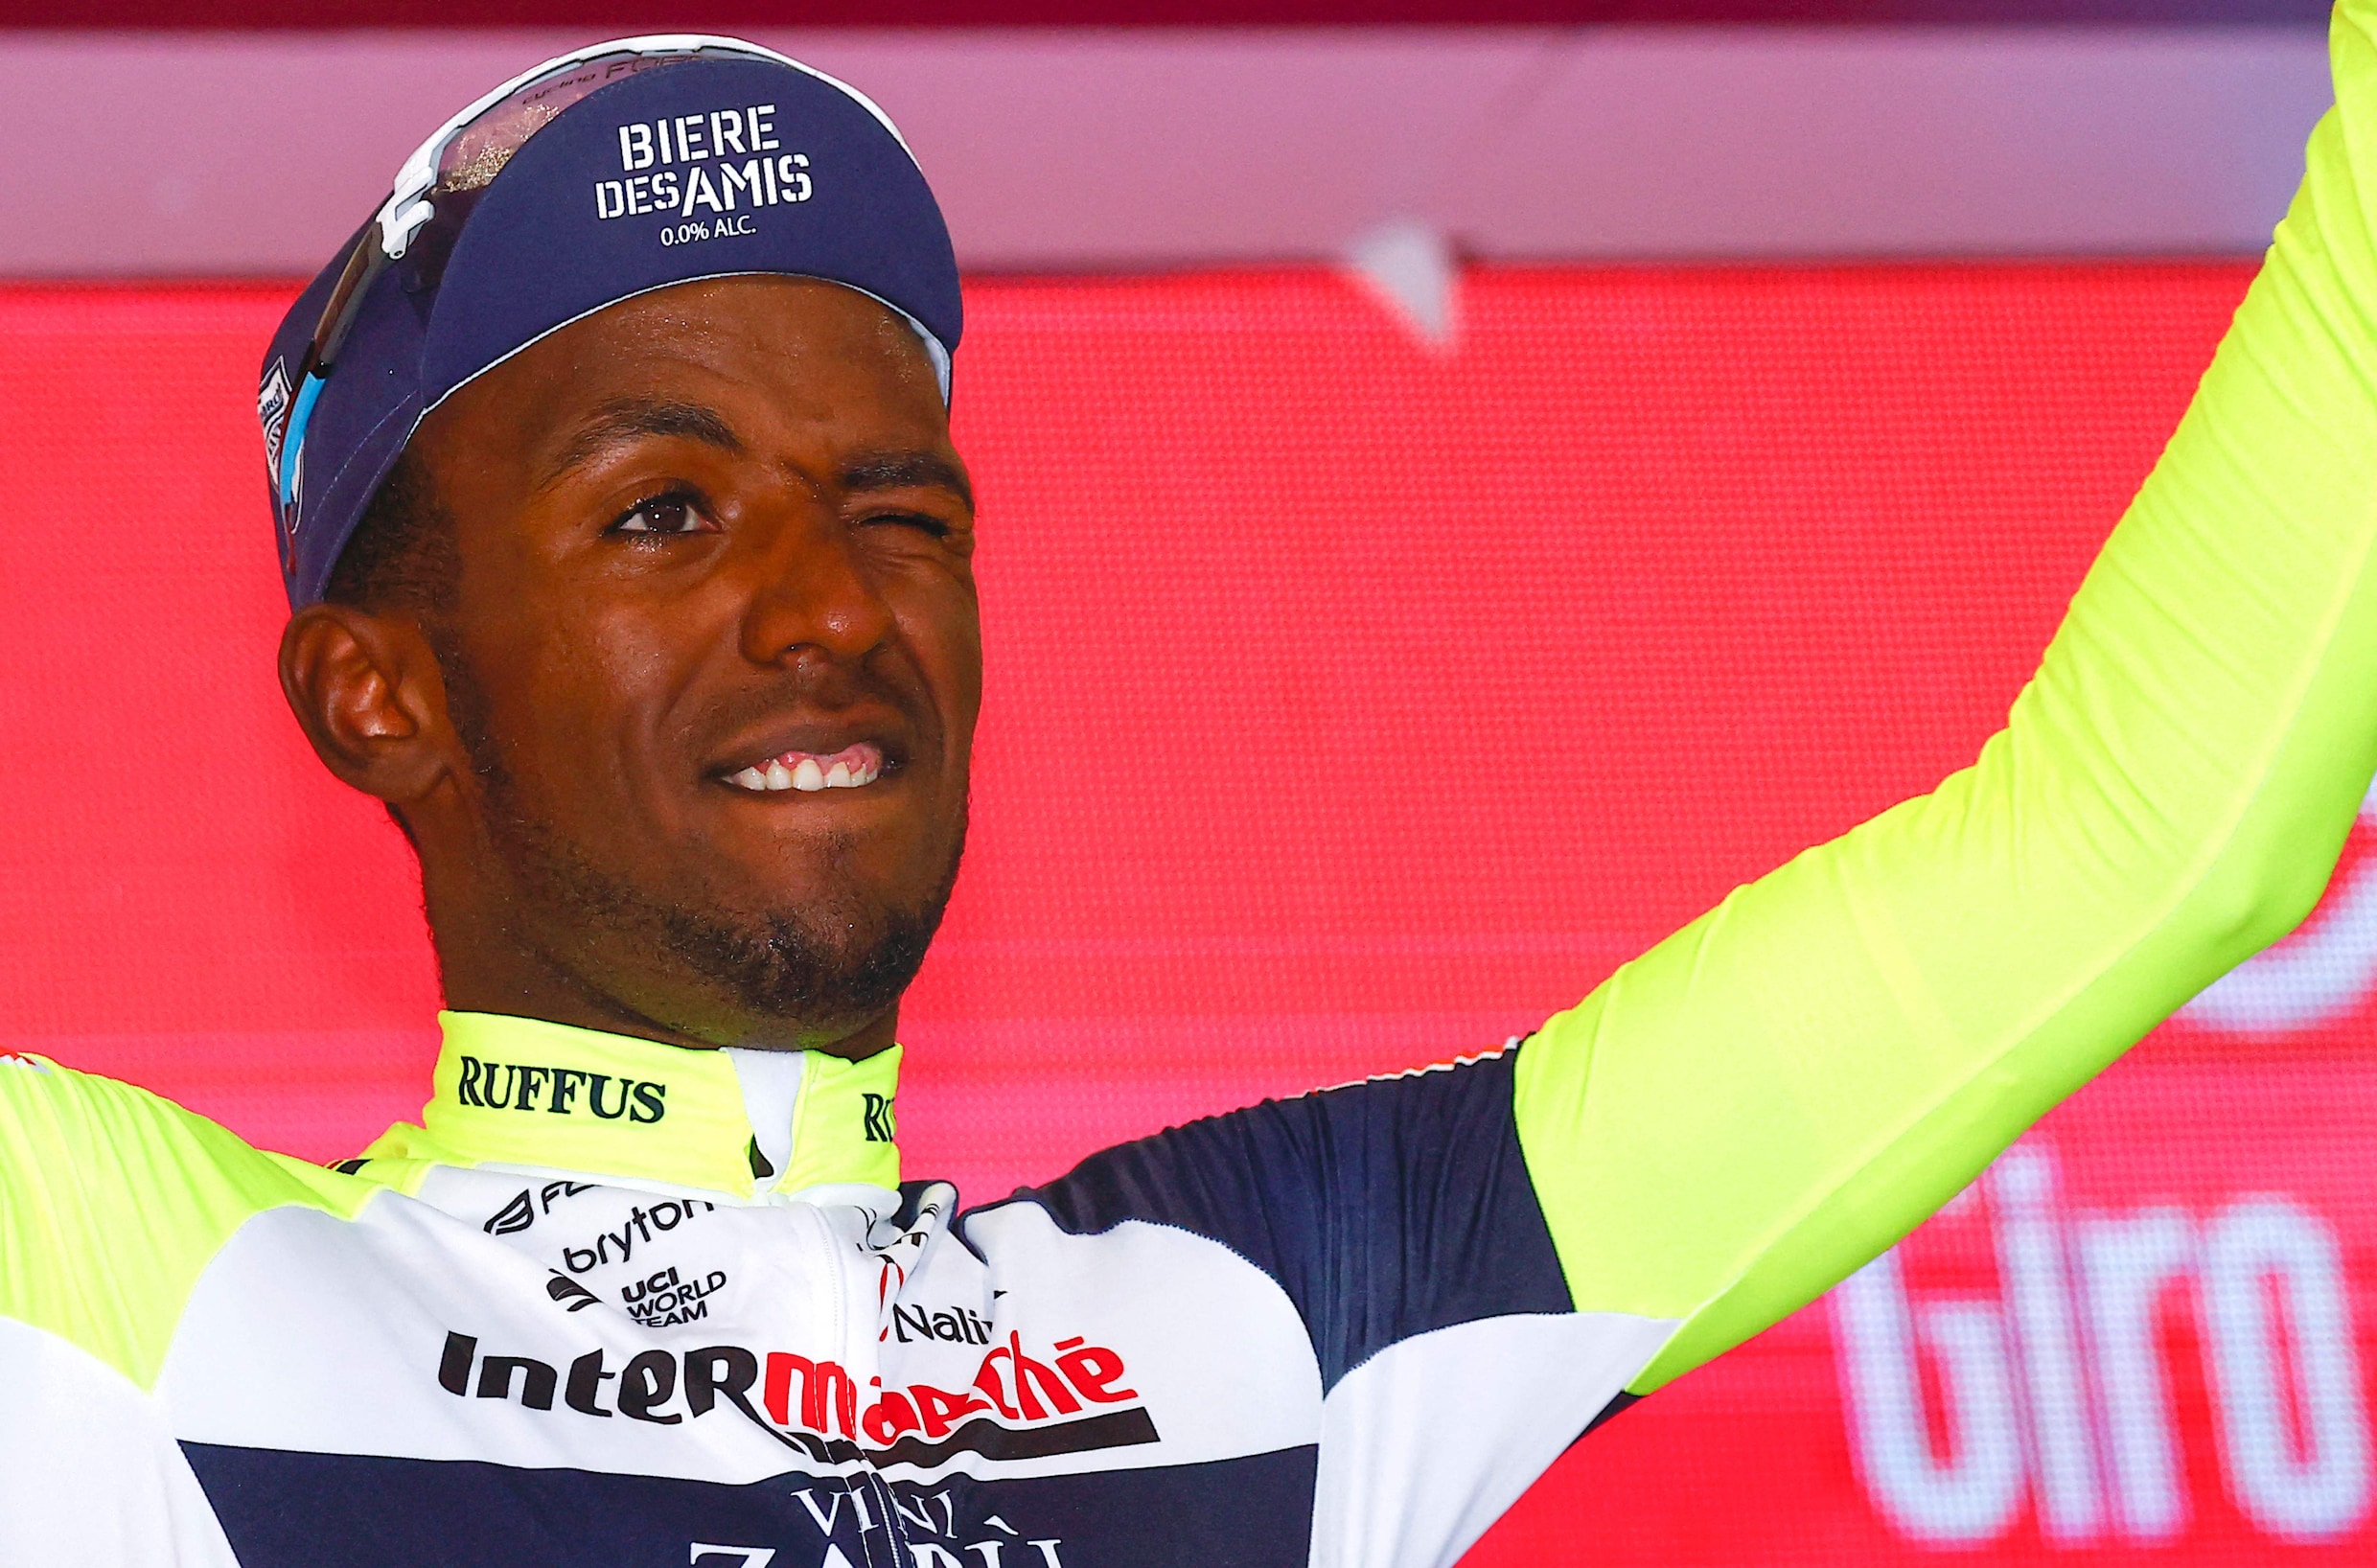 ► Girmay wint tiende etappe in de Giro, maar krijgt tijdens podiumceremonie kurk in zijn oog